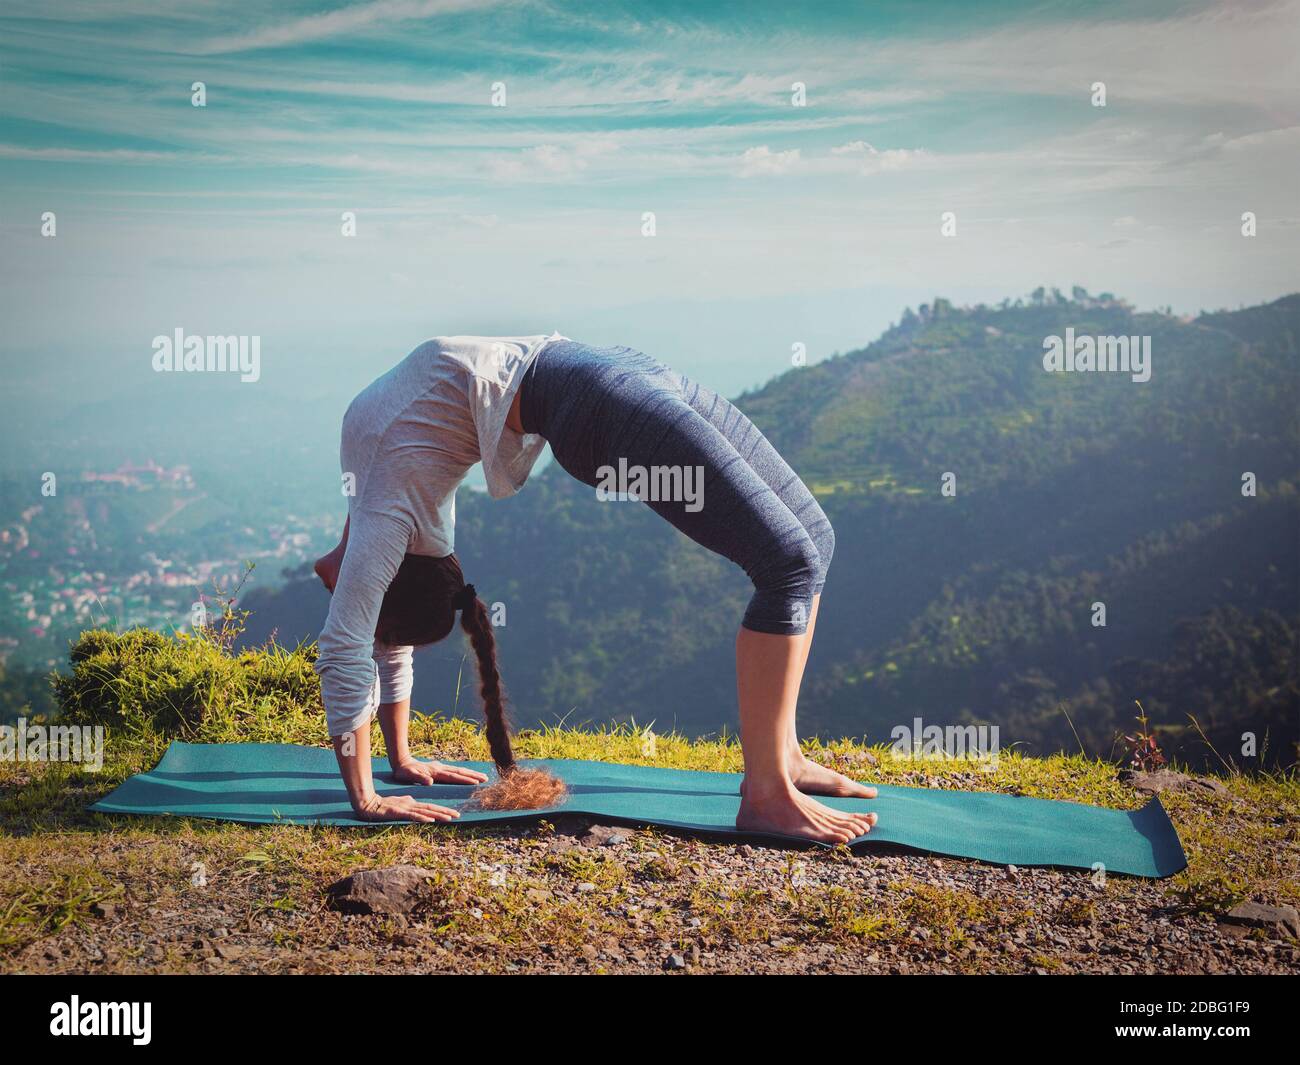 Yoga à l'extérieur - jeune femme sportive faisant Ashtanga Vinyasa Yoga asana Urdhva Dhanurasana - posture de l'arc vers le haut - po Montagnes de l'Himalaya dans la matinée Banque D'Images